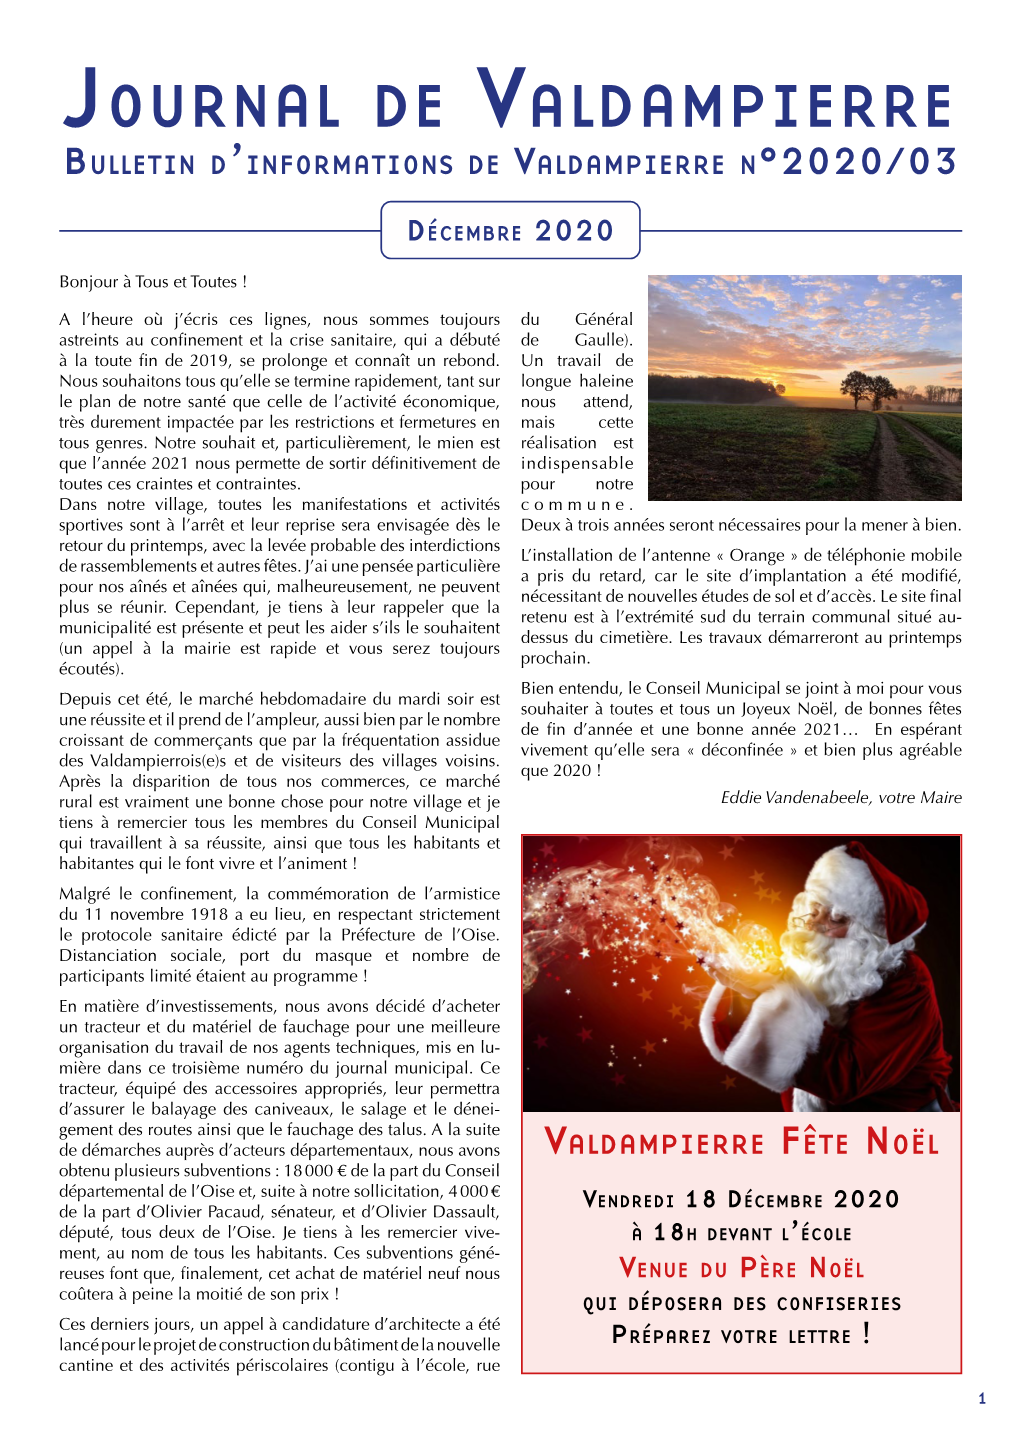 Journal De Valdampierre Bulletin D’Informations De Valdampierre N°2020/03